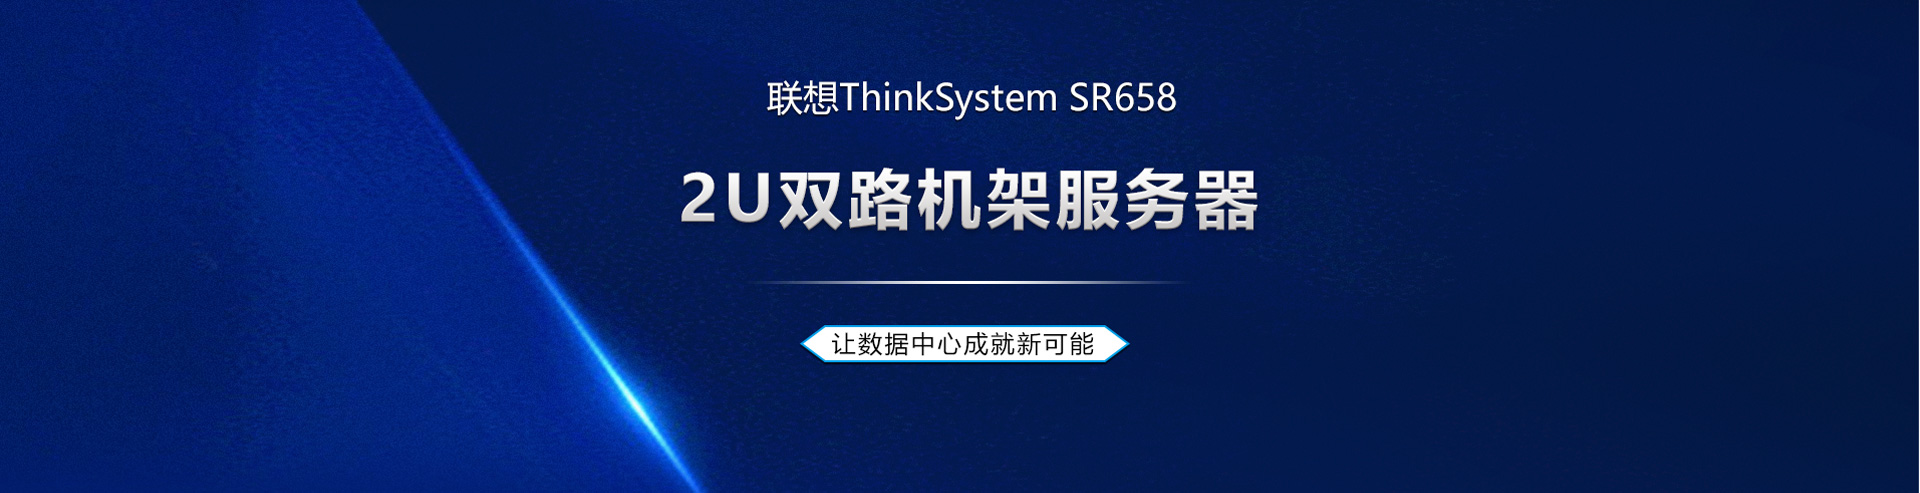 联想SR658数据库虚拟化GPU服务器3204*2/128G